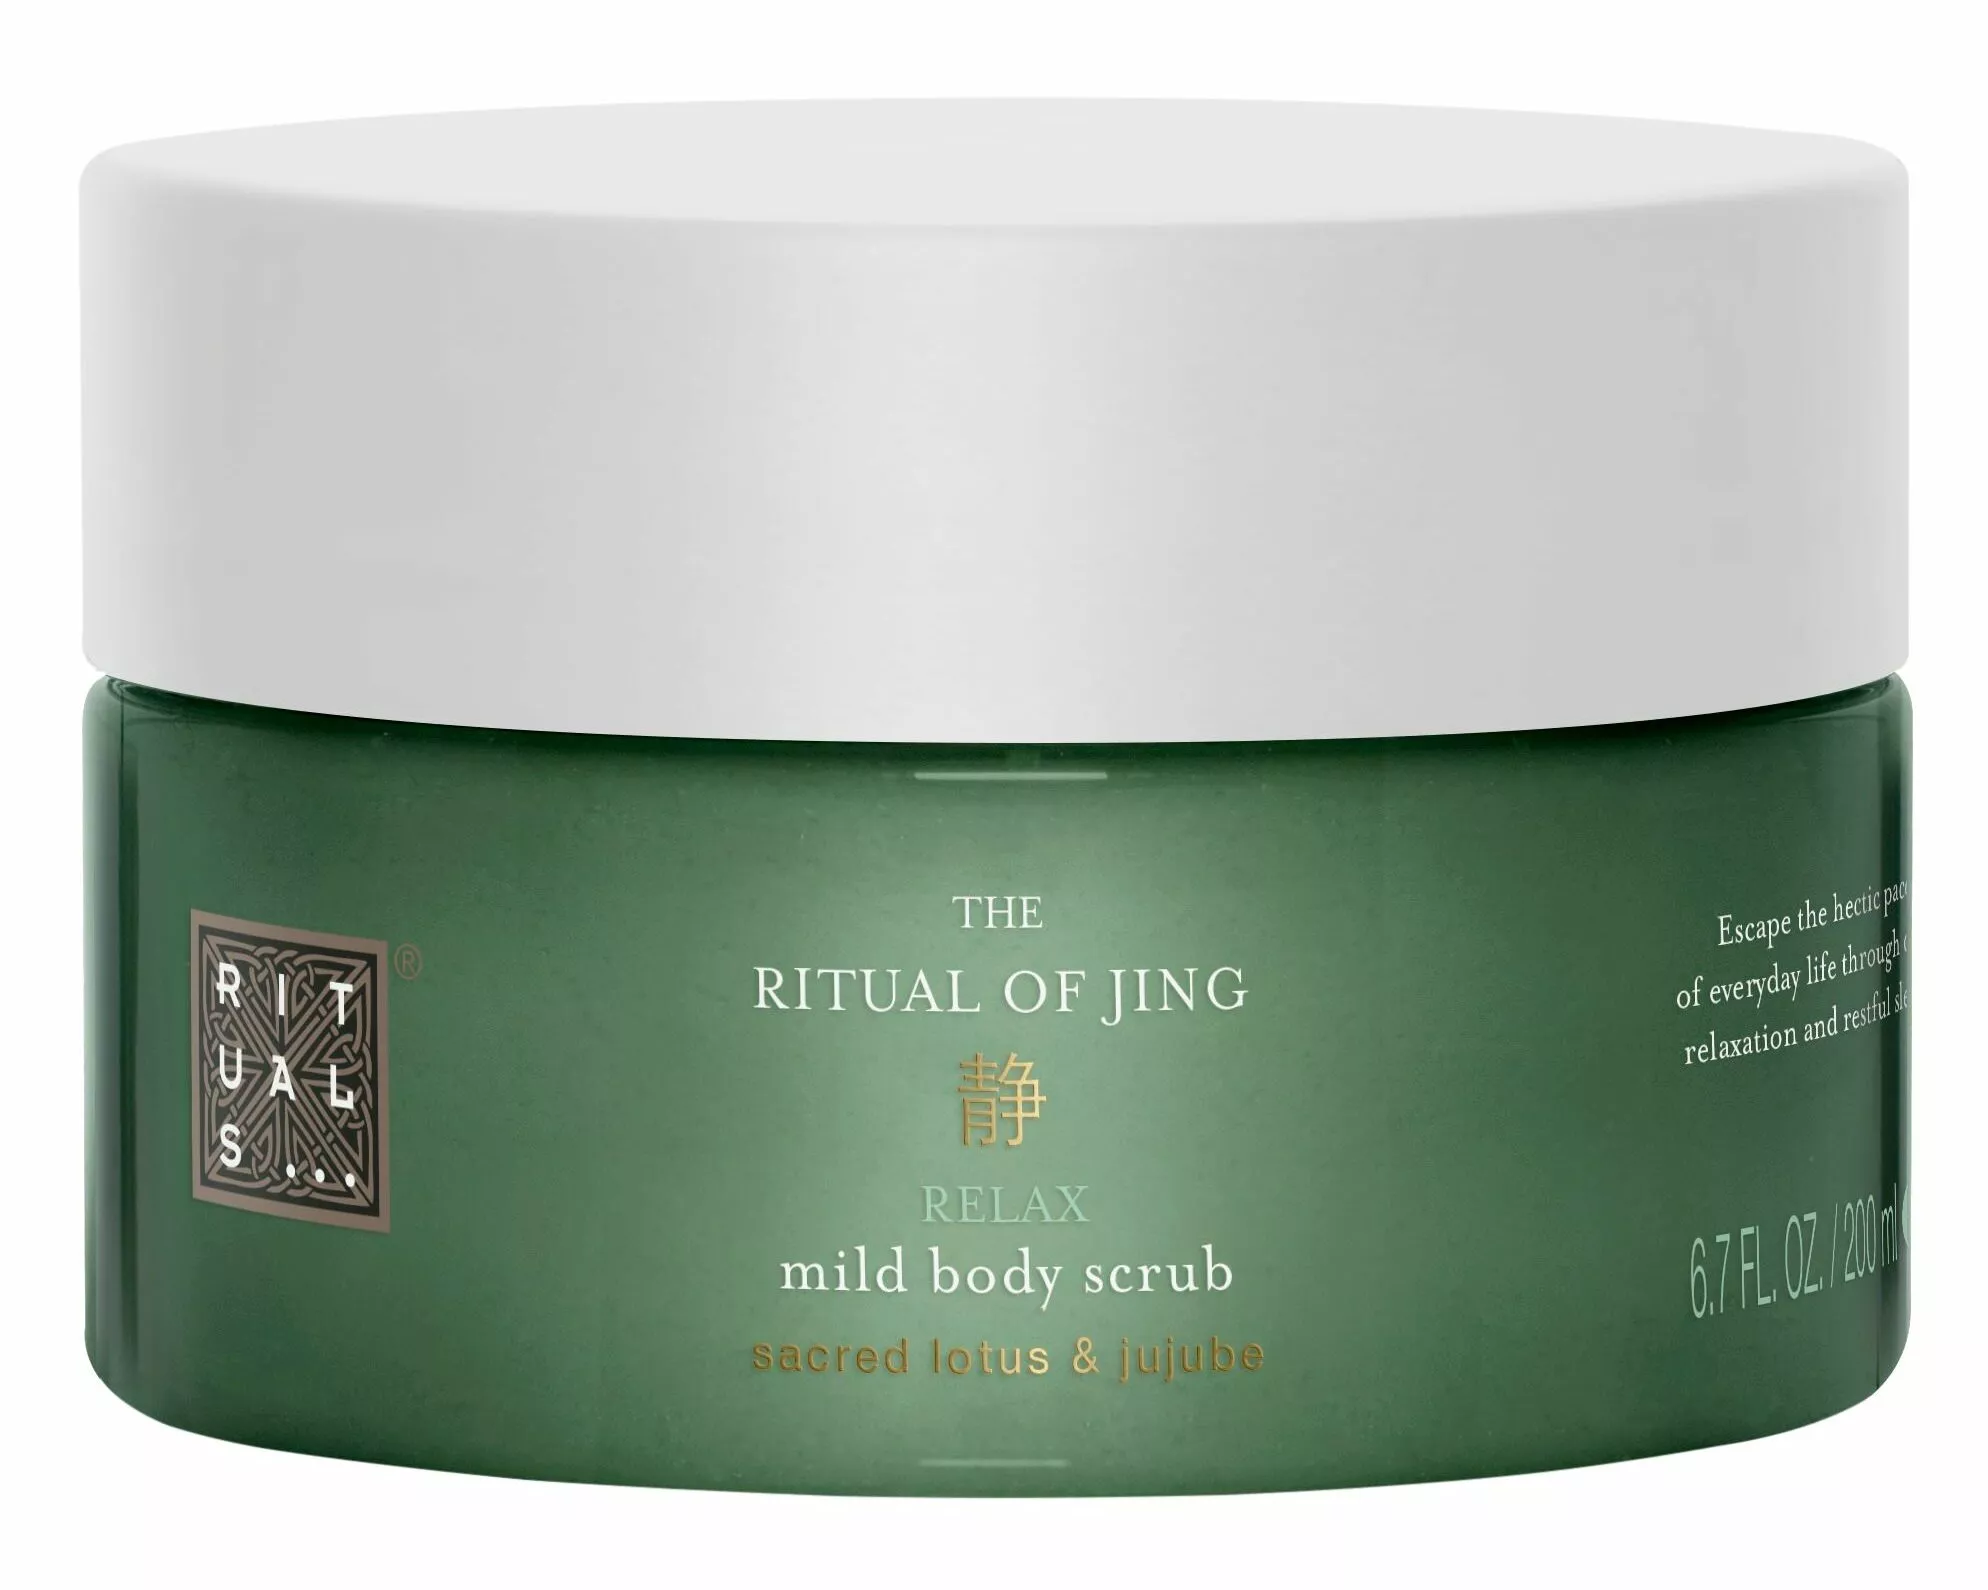 Magnesiumia ja öljyjä sisältävä Rituals The Ritual Of Jing Body Scrub -suolakuorinta on 93-prosenttisesti luonnollista alkuperää, 300 g 17,50 e.